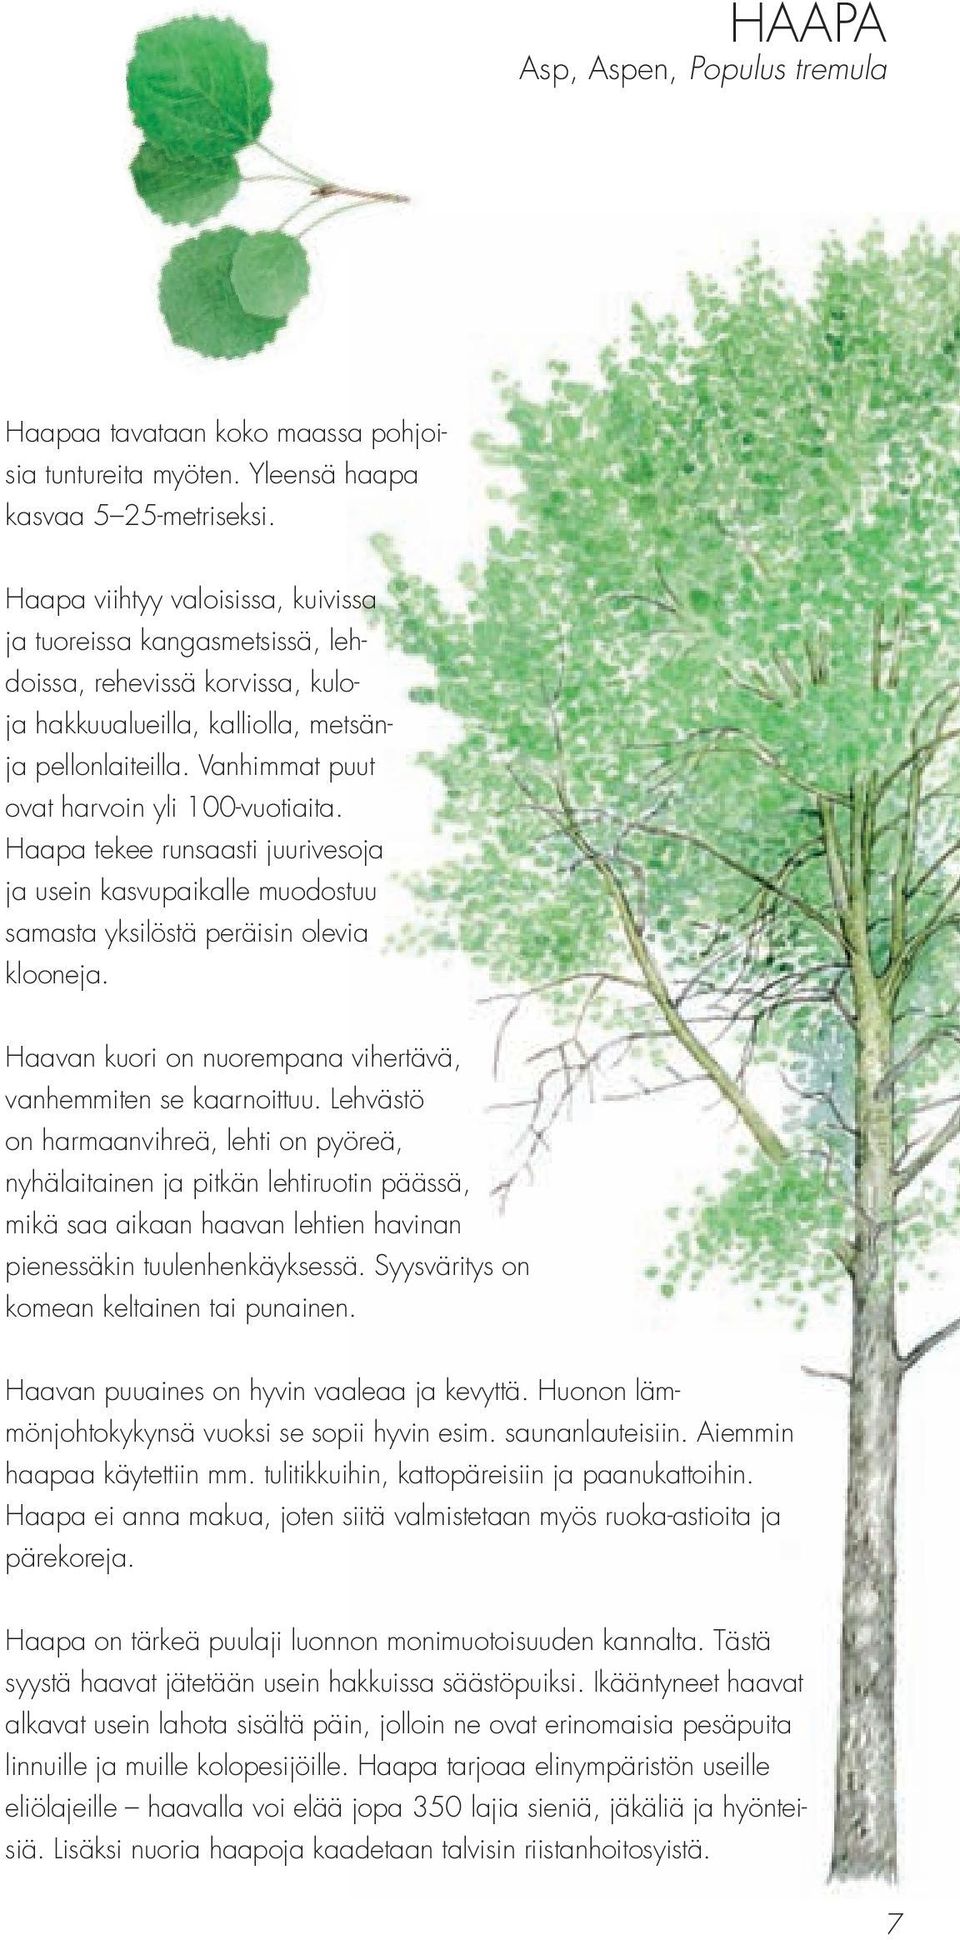 Vanhimmat puut ovat harvoin yli 100-vuotiaita. Haapa tekee runsaasti juurivesoja ja usein kasvupaikalle muodostuu samasta yksilöstä peräisin olevia klooneja.